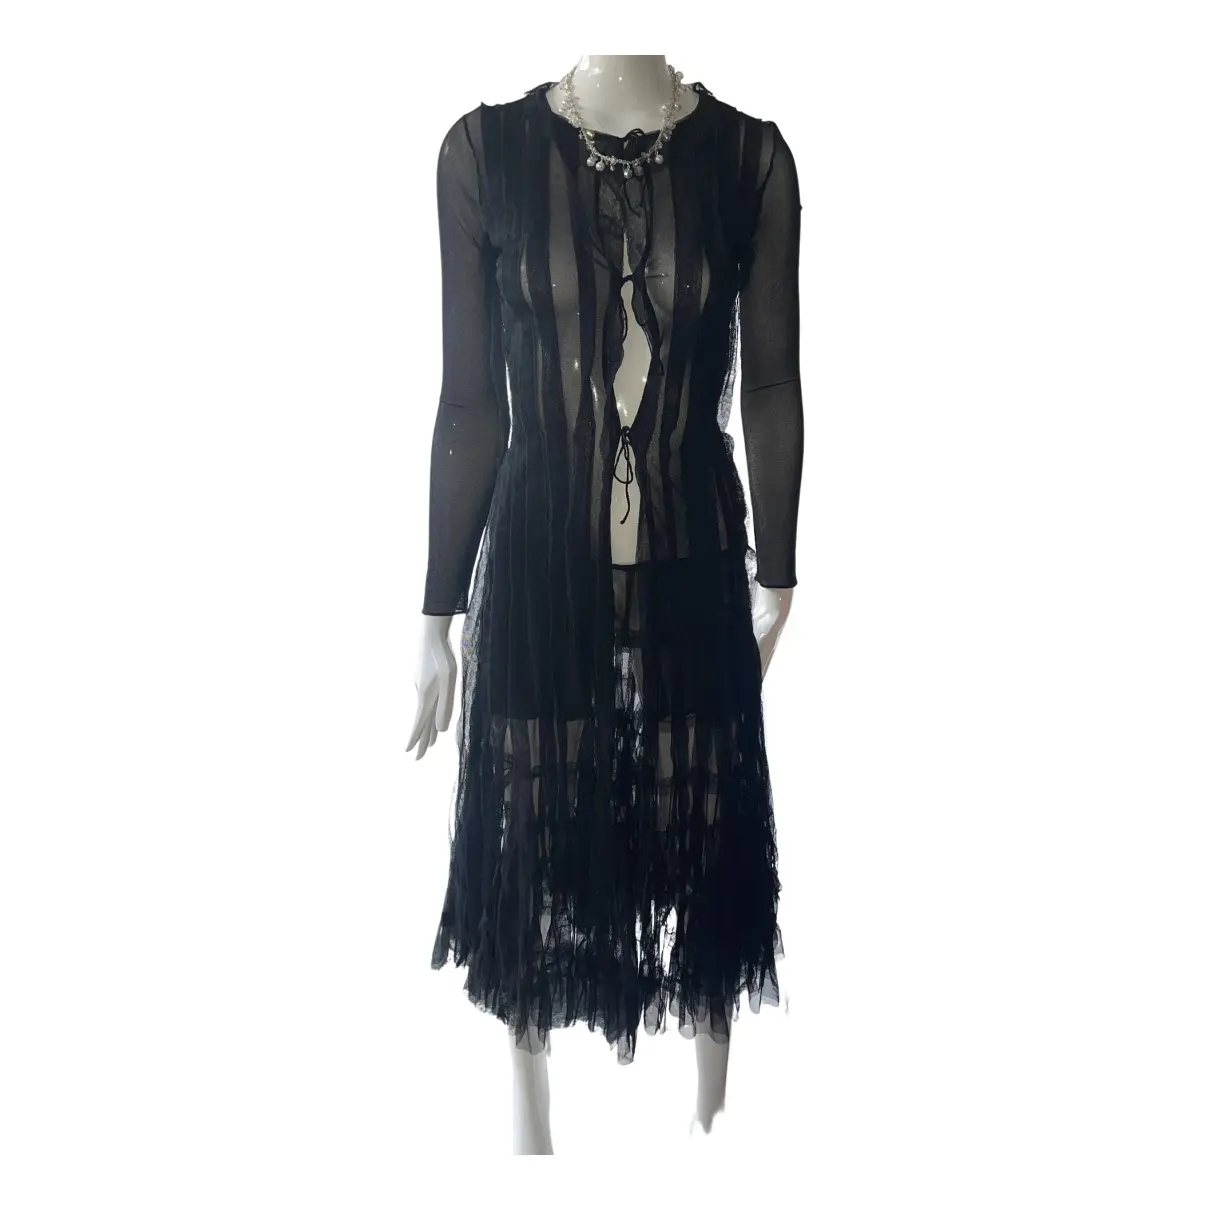 Buy Jean Paul Gaultier Skirt suit online